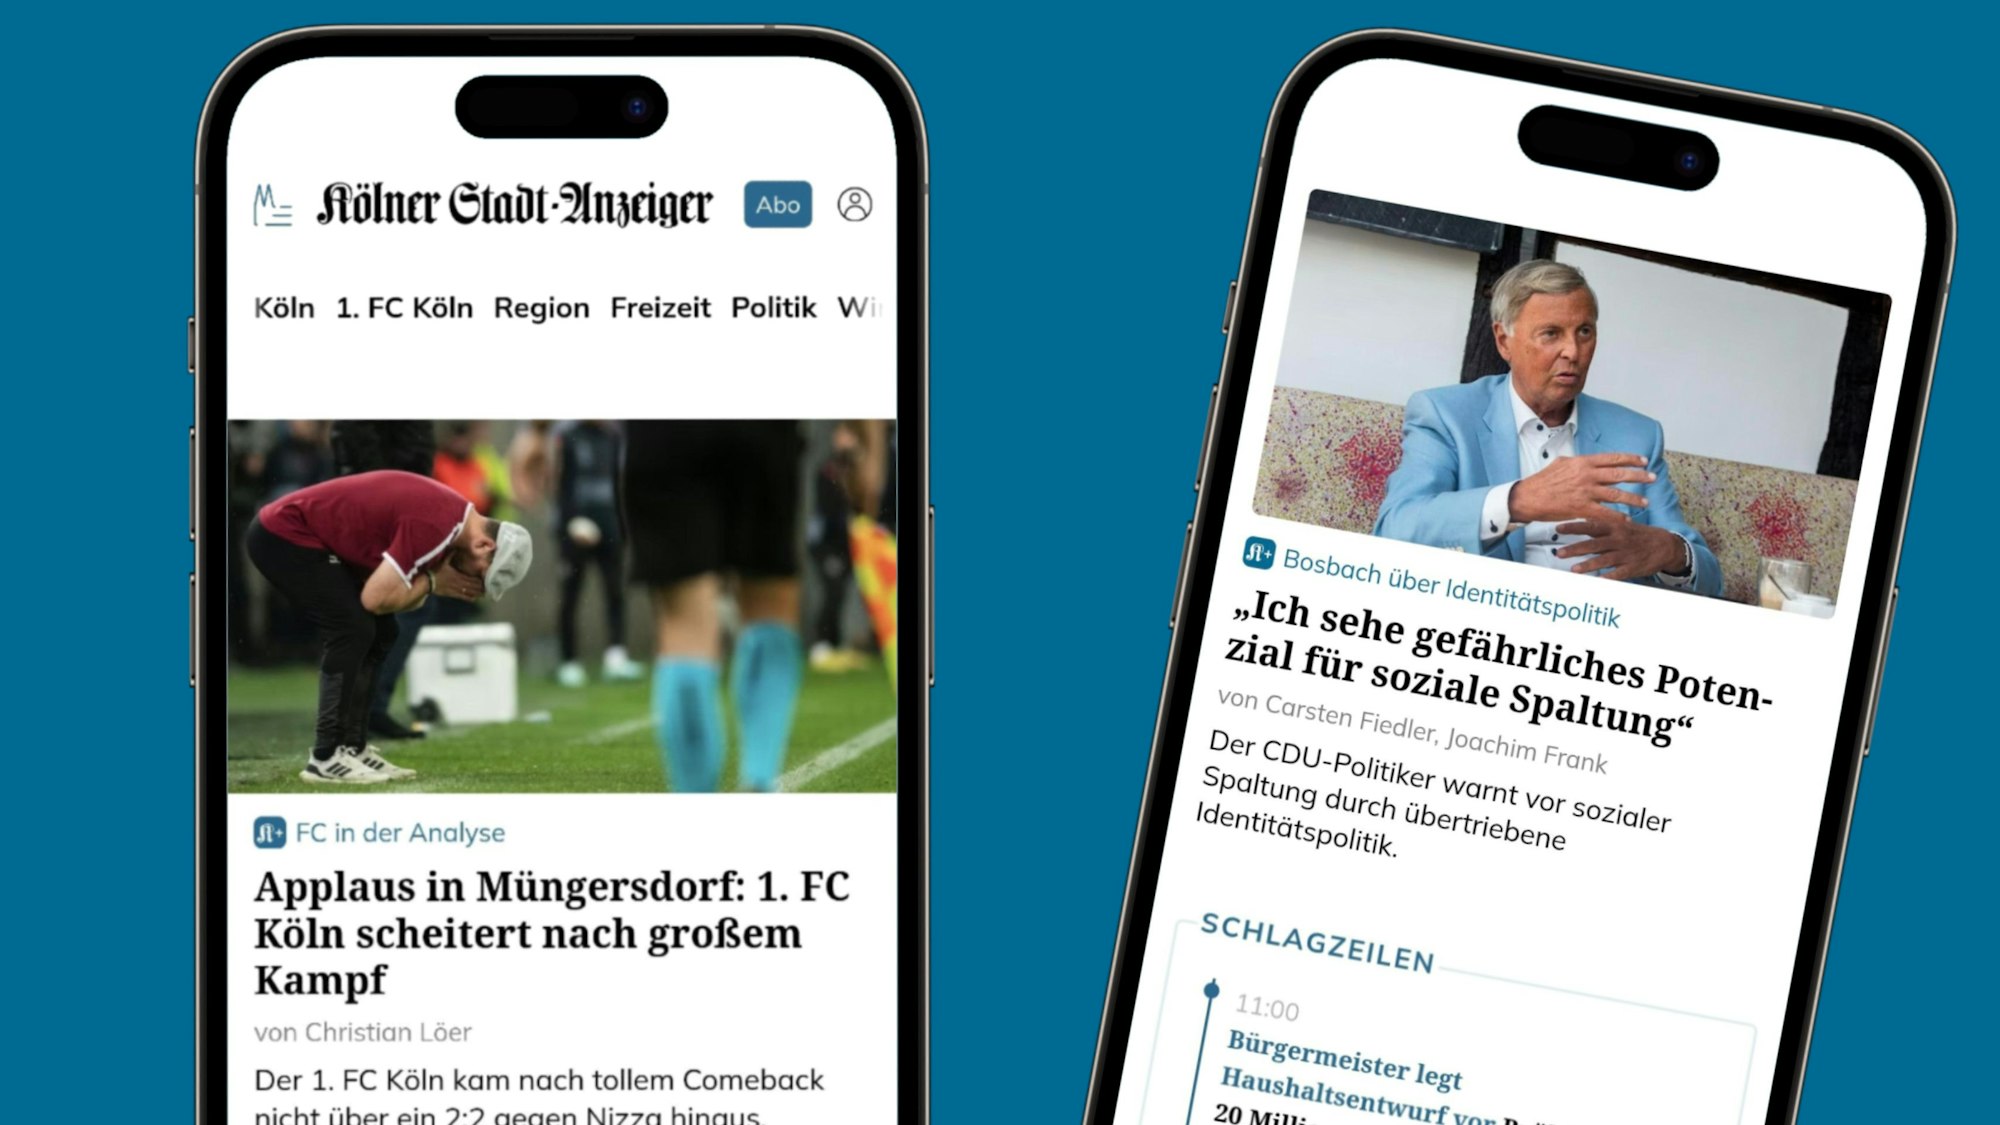 Auf zwei Handys sind Auszüge der Webseite ksta.de zu sehen. FC-Trainer Steffen Baumgart steht auf dem Bild zu einem Text gebeugt und schlägt die Hände vors Gesicht.